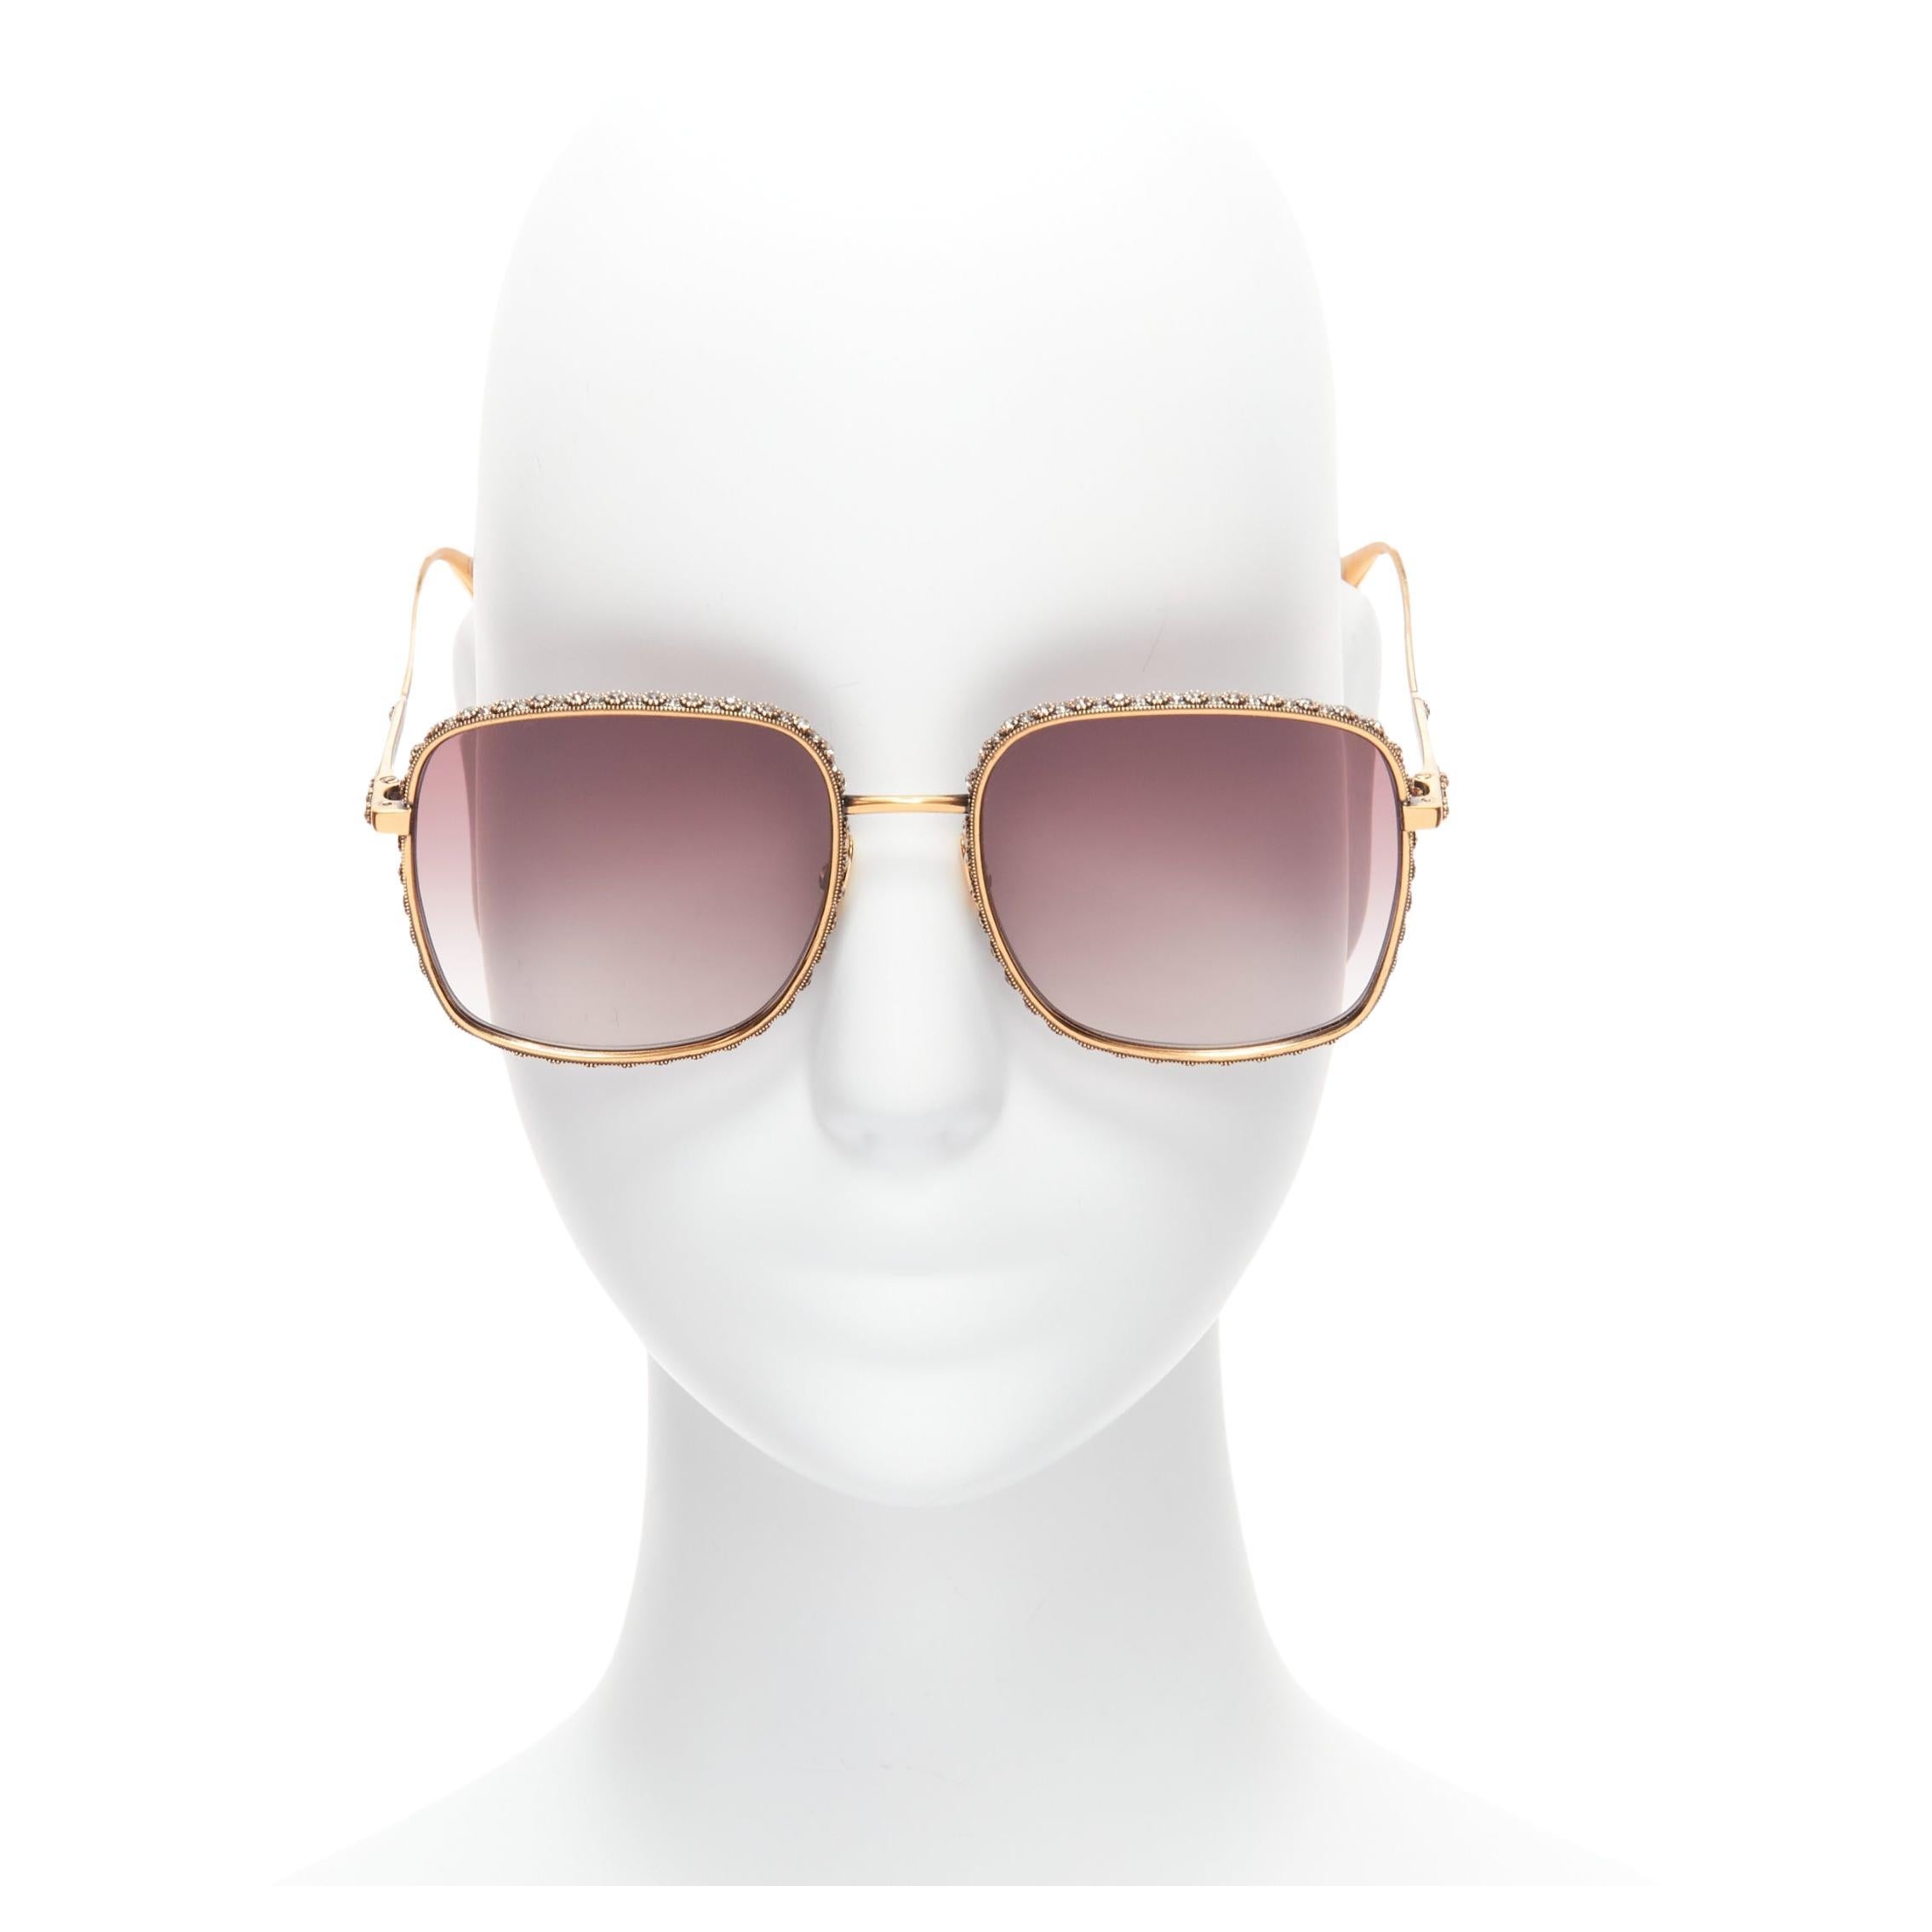 Dior - Sunglasses - Dior0219S - Silver Crystal - Dior Eyewear